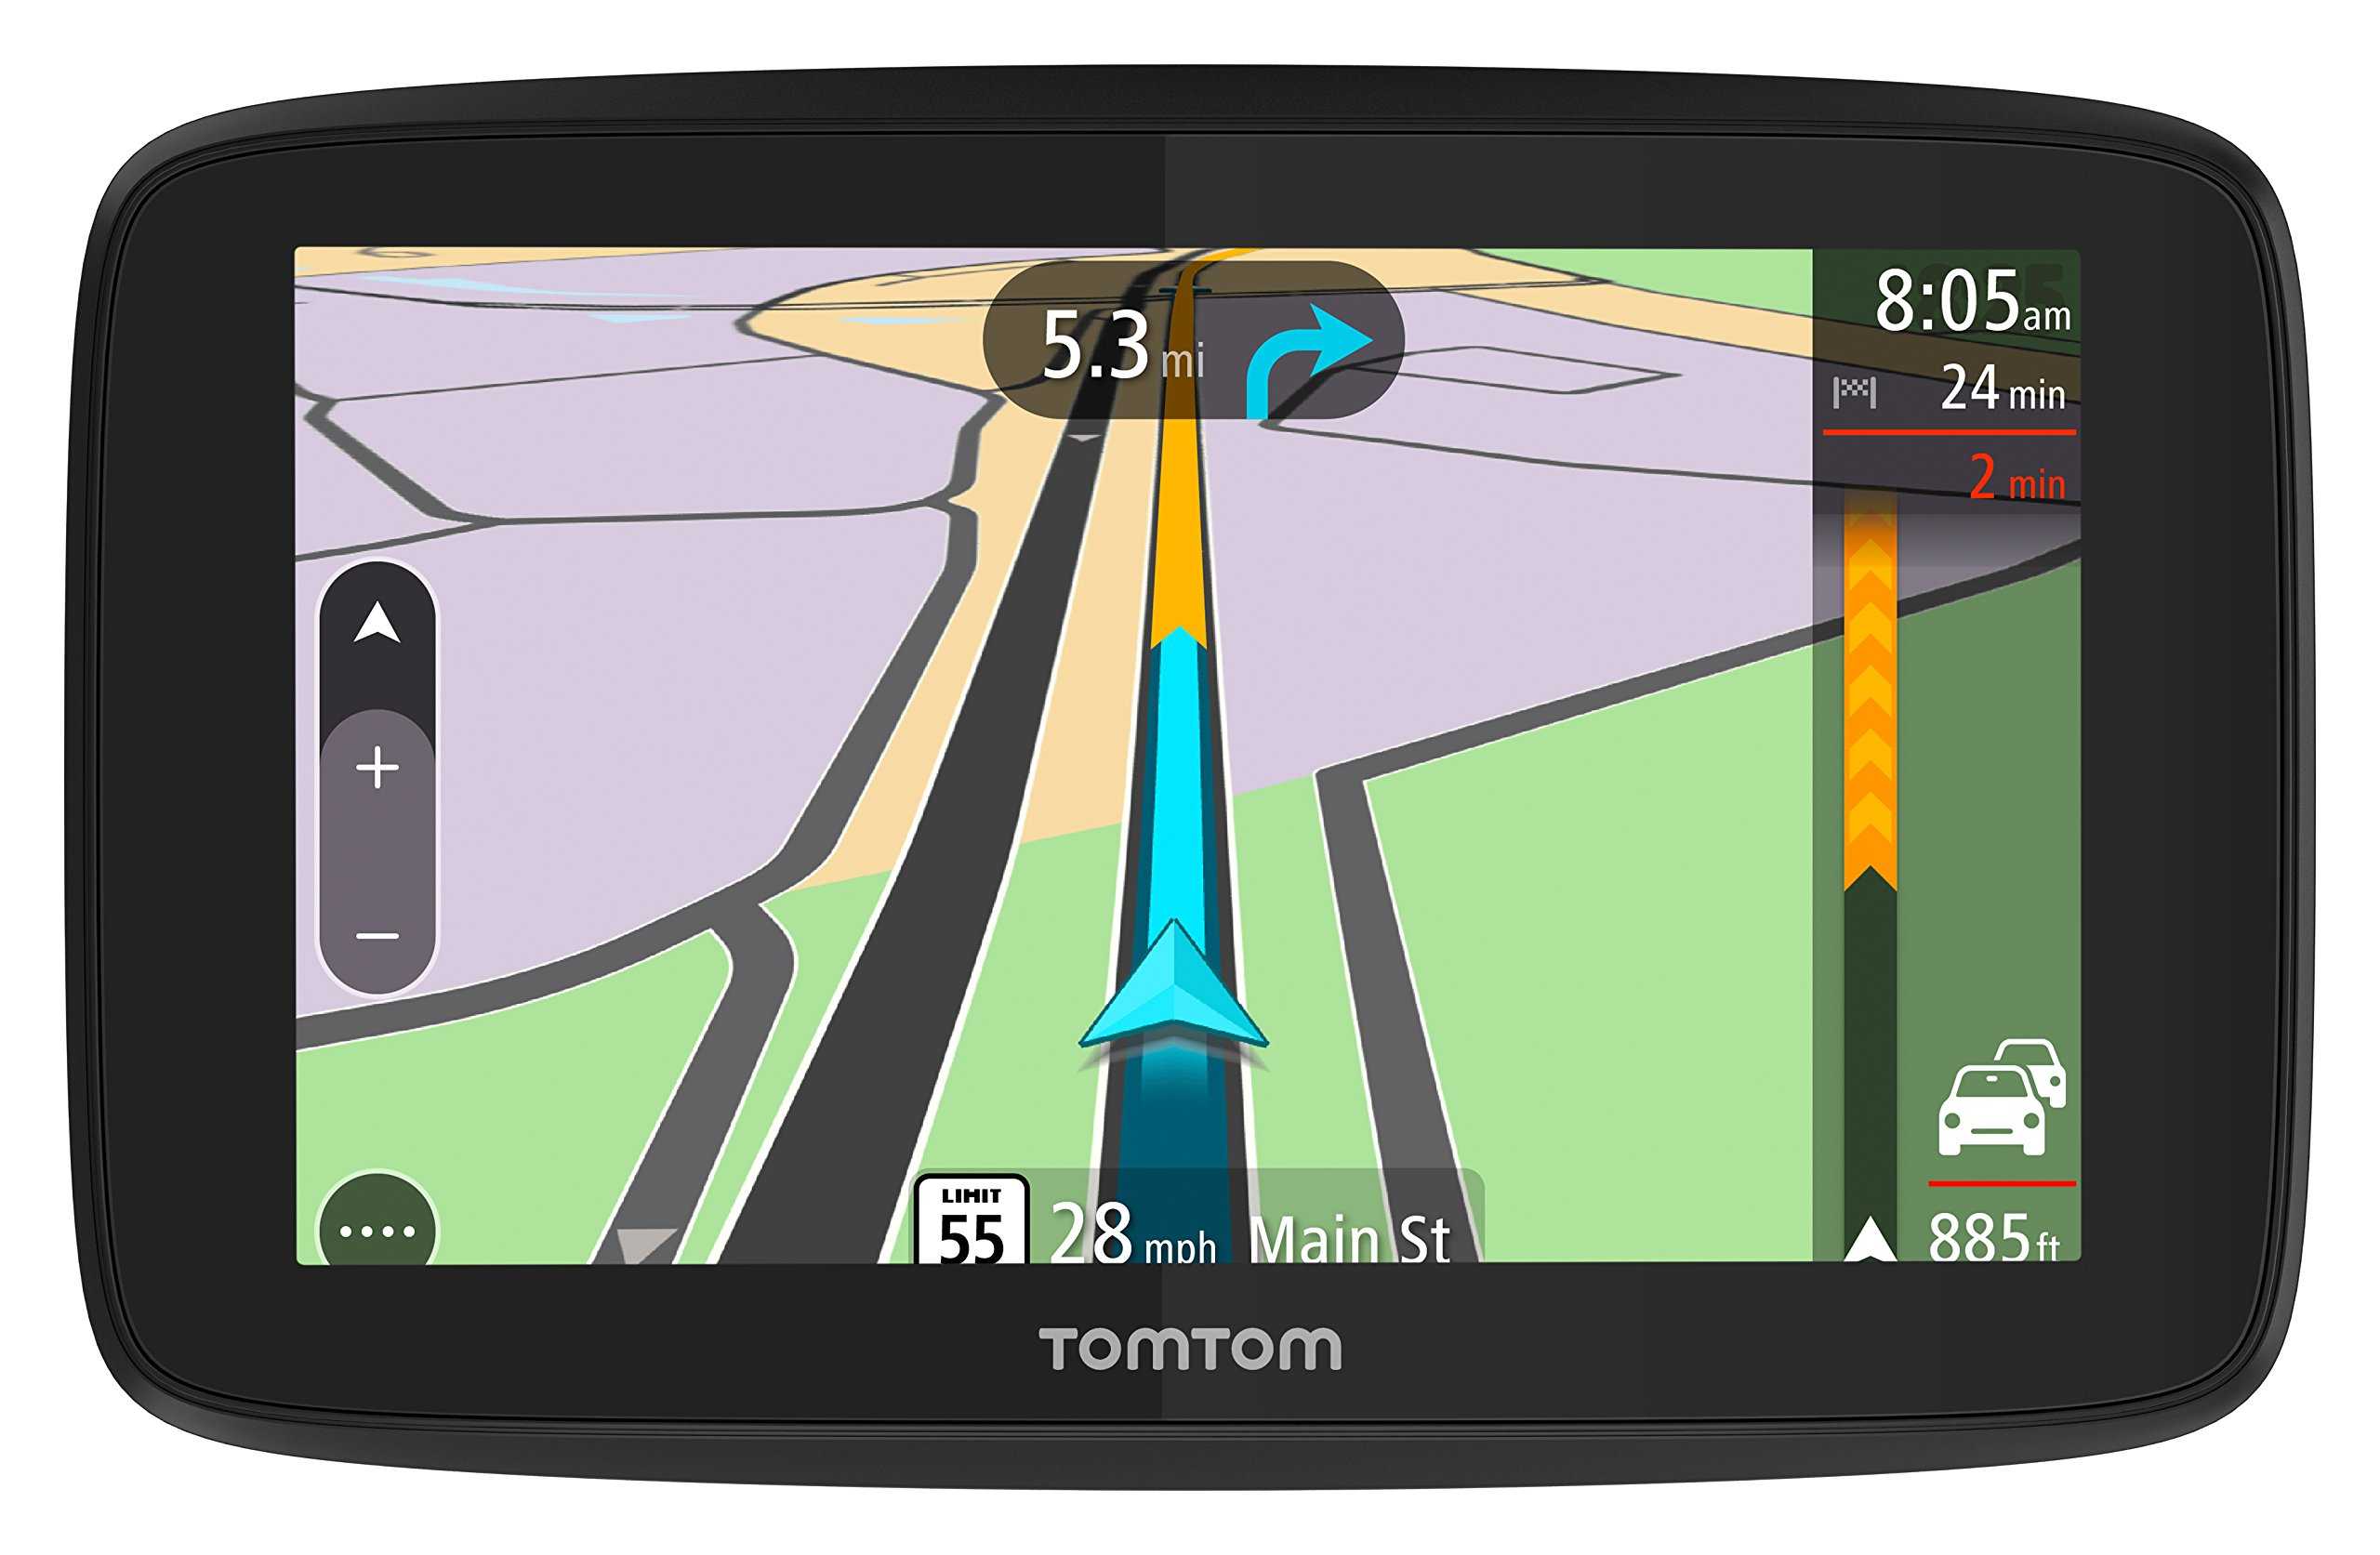 TomTom Europe 8753612 v19 – это самые новые карты навигации которые поддерживаются iPhone 4 Данная версия TomTom Europe значительно улучшила функциональные возможности iPhone 4 благода